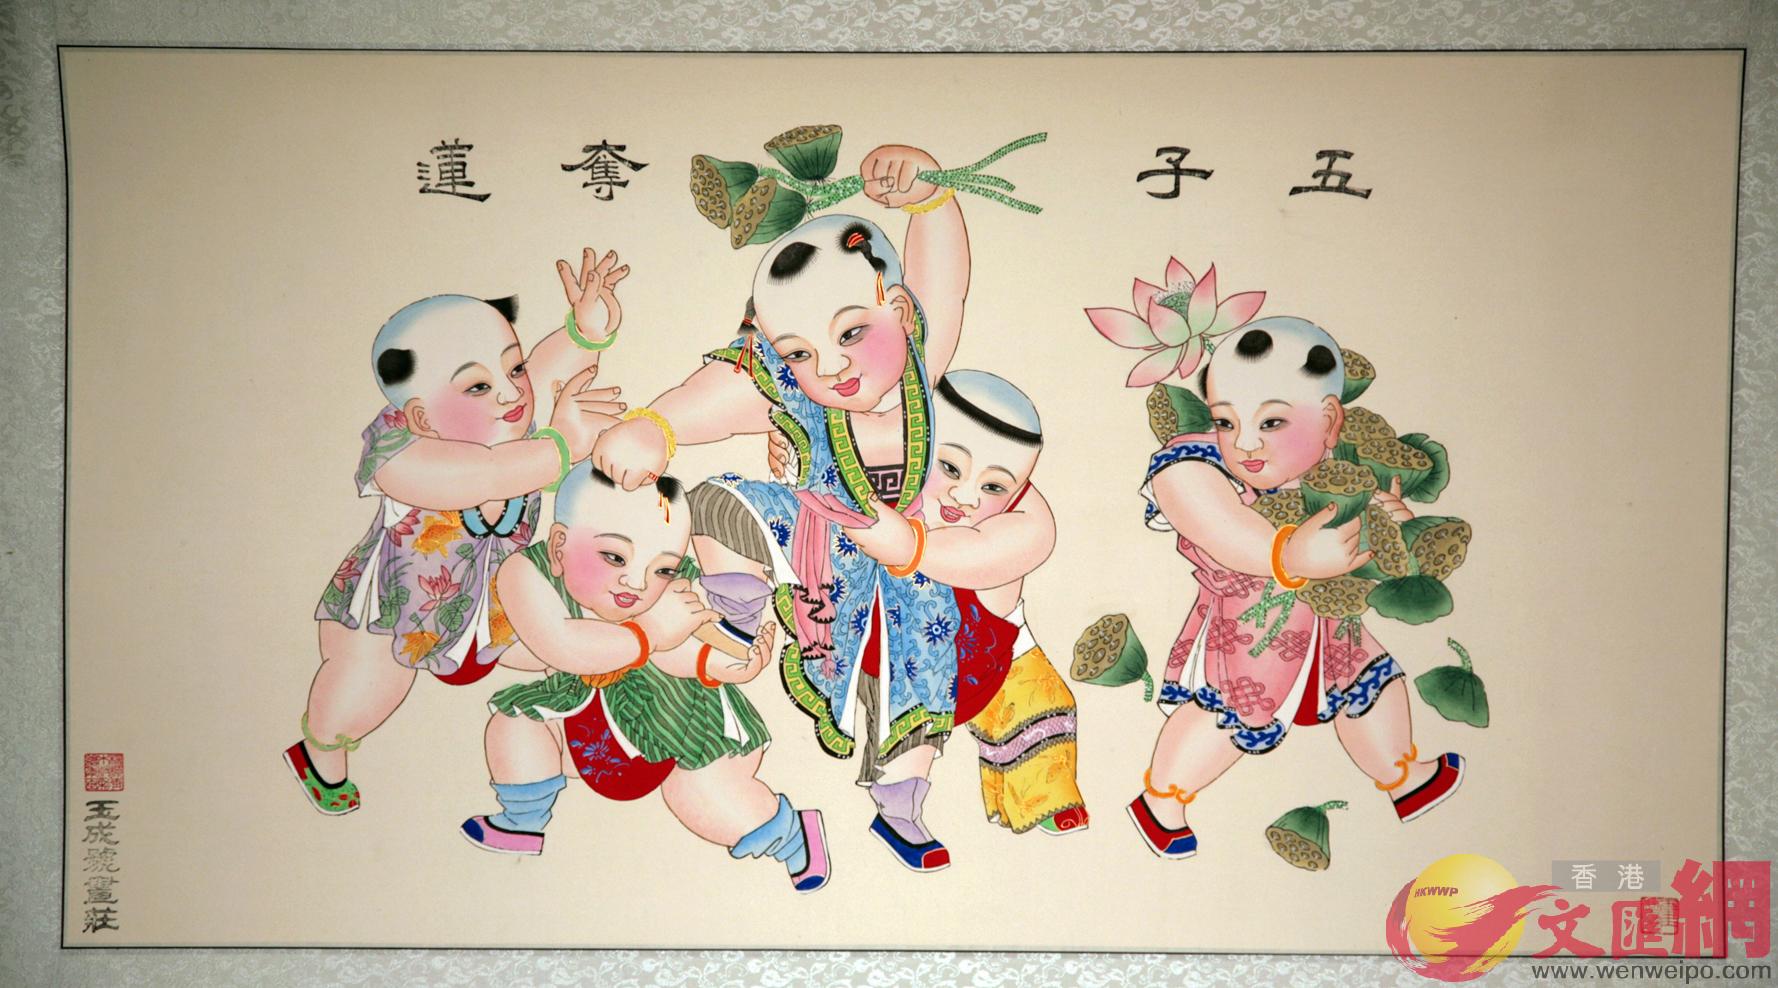 柳青木版年畫是中國傳統四大年畫之一C]主辦方供圖^